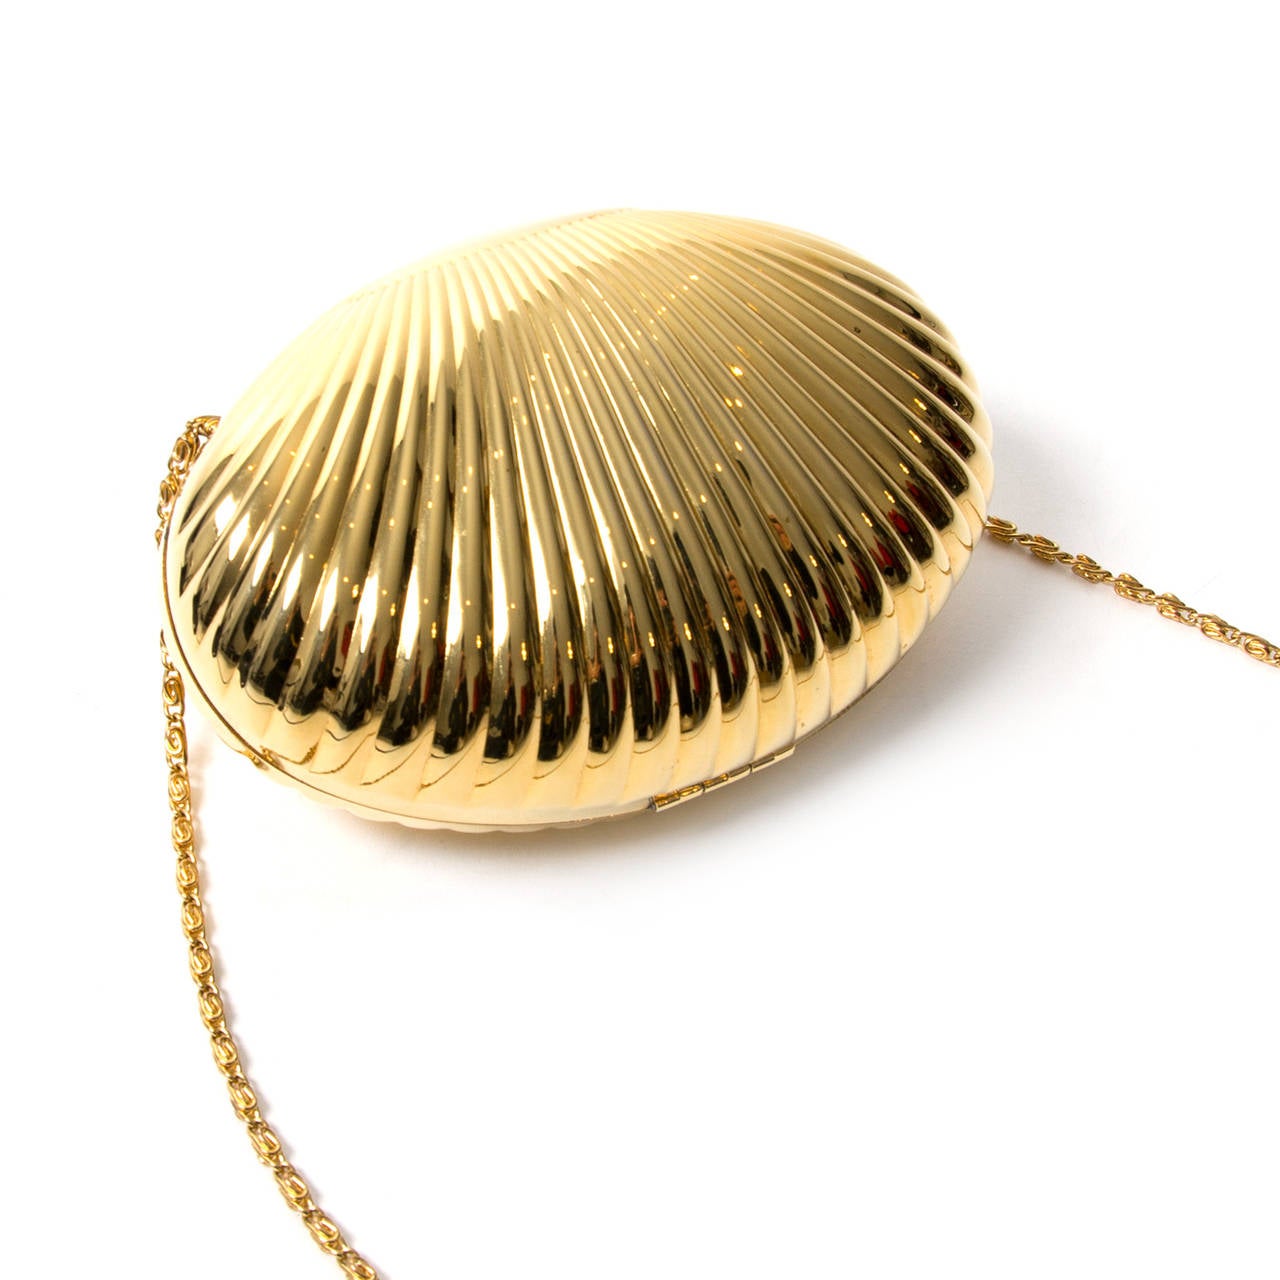 Dolce & Gabbana Goldene Muschel-Clutch. 

Kleine Clutch in Muschelform aus glänzendem Metall. 

DG-Logo auf der Vorderseite mit Kristallen verziert. Metallband zum Tragen über der Schulter. 

Futter mit Leopardenmuster